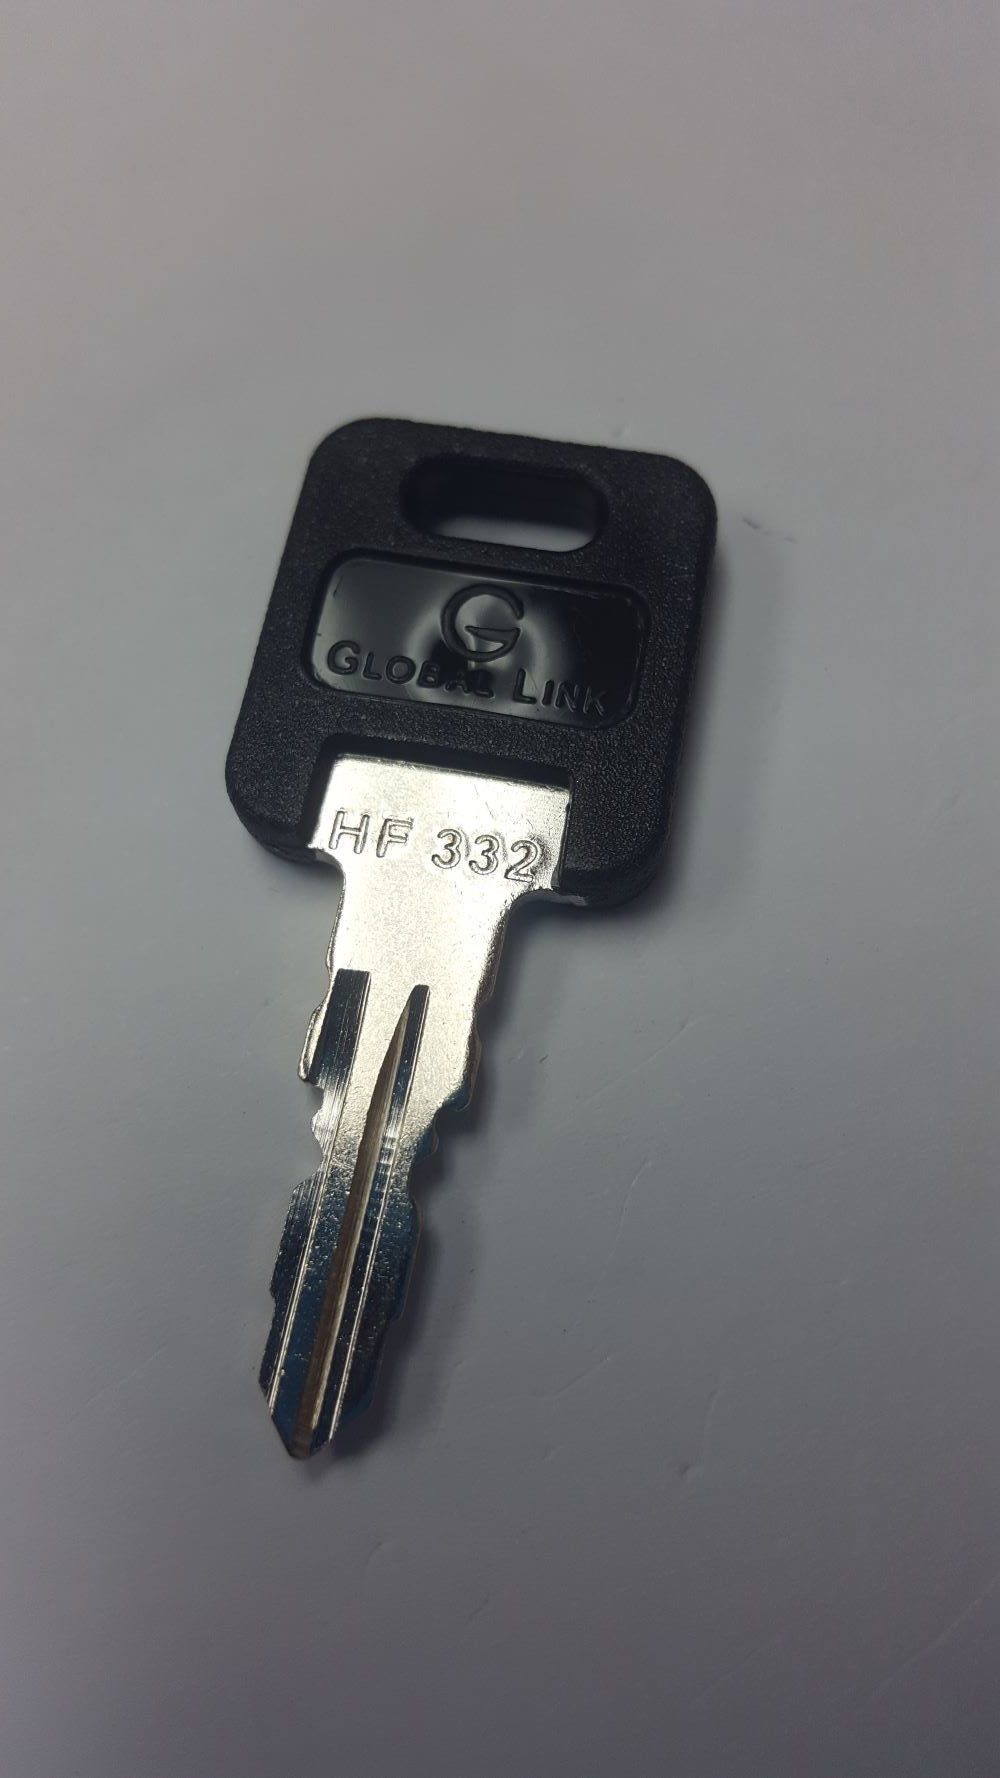 CPG KEY-HF-332 Pre-cut Stamped FIC Replacemnt HF332 Key